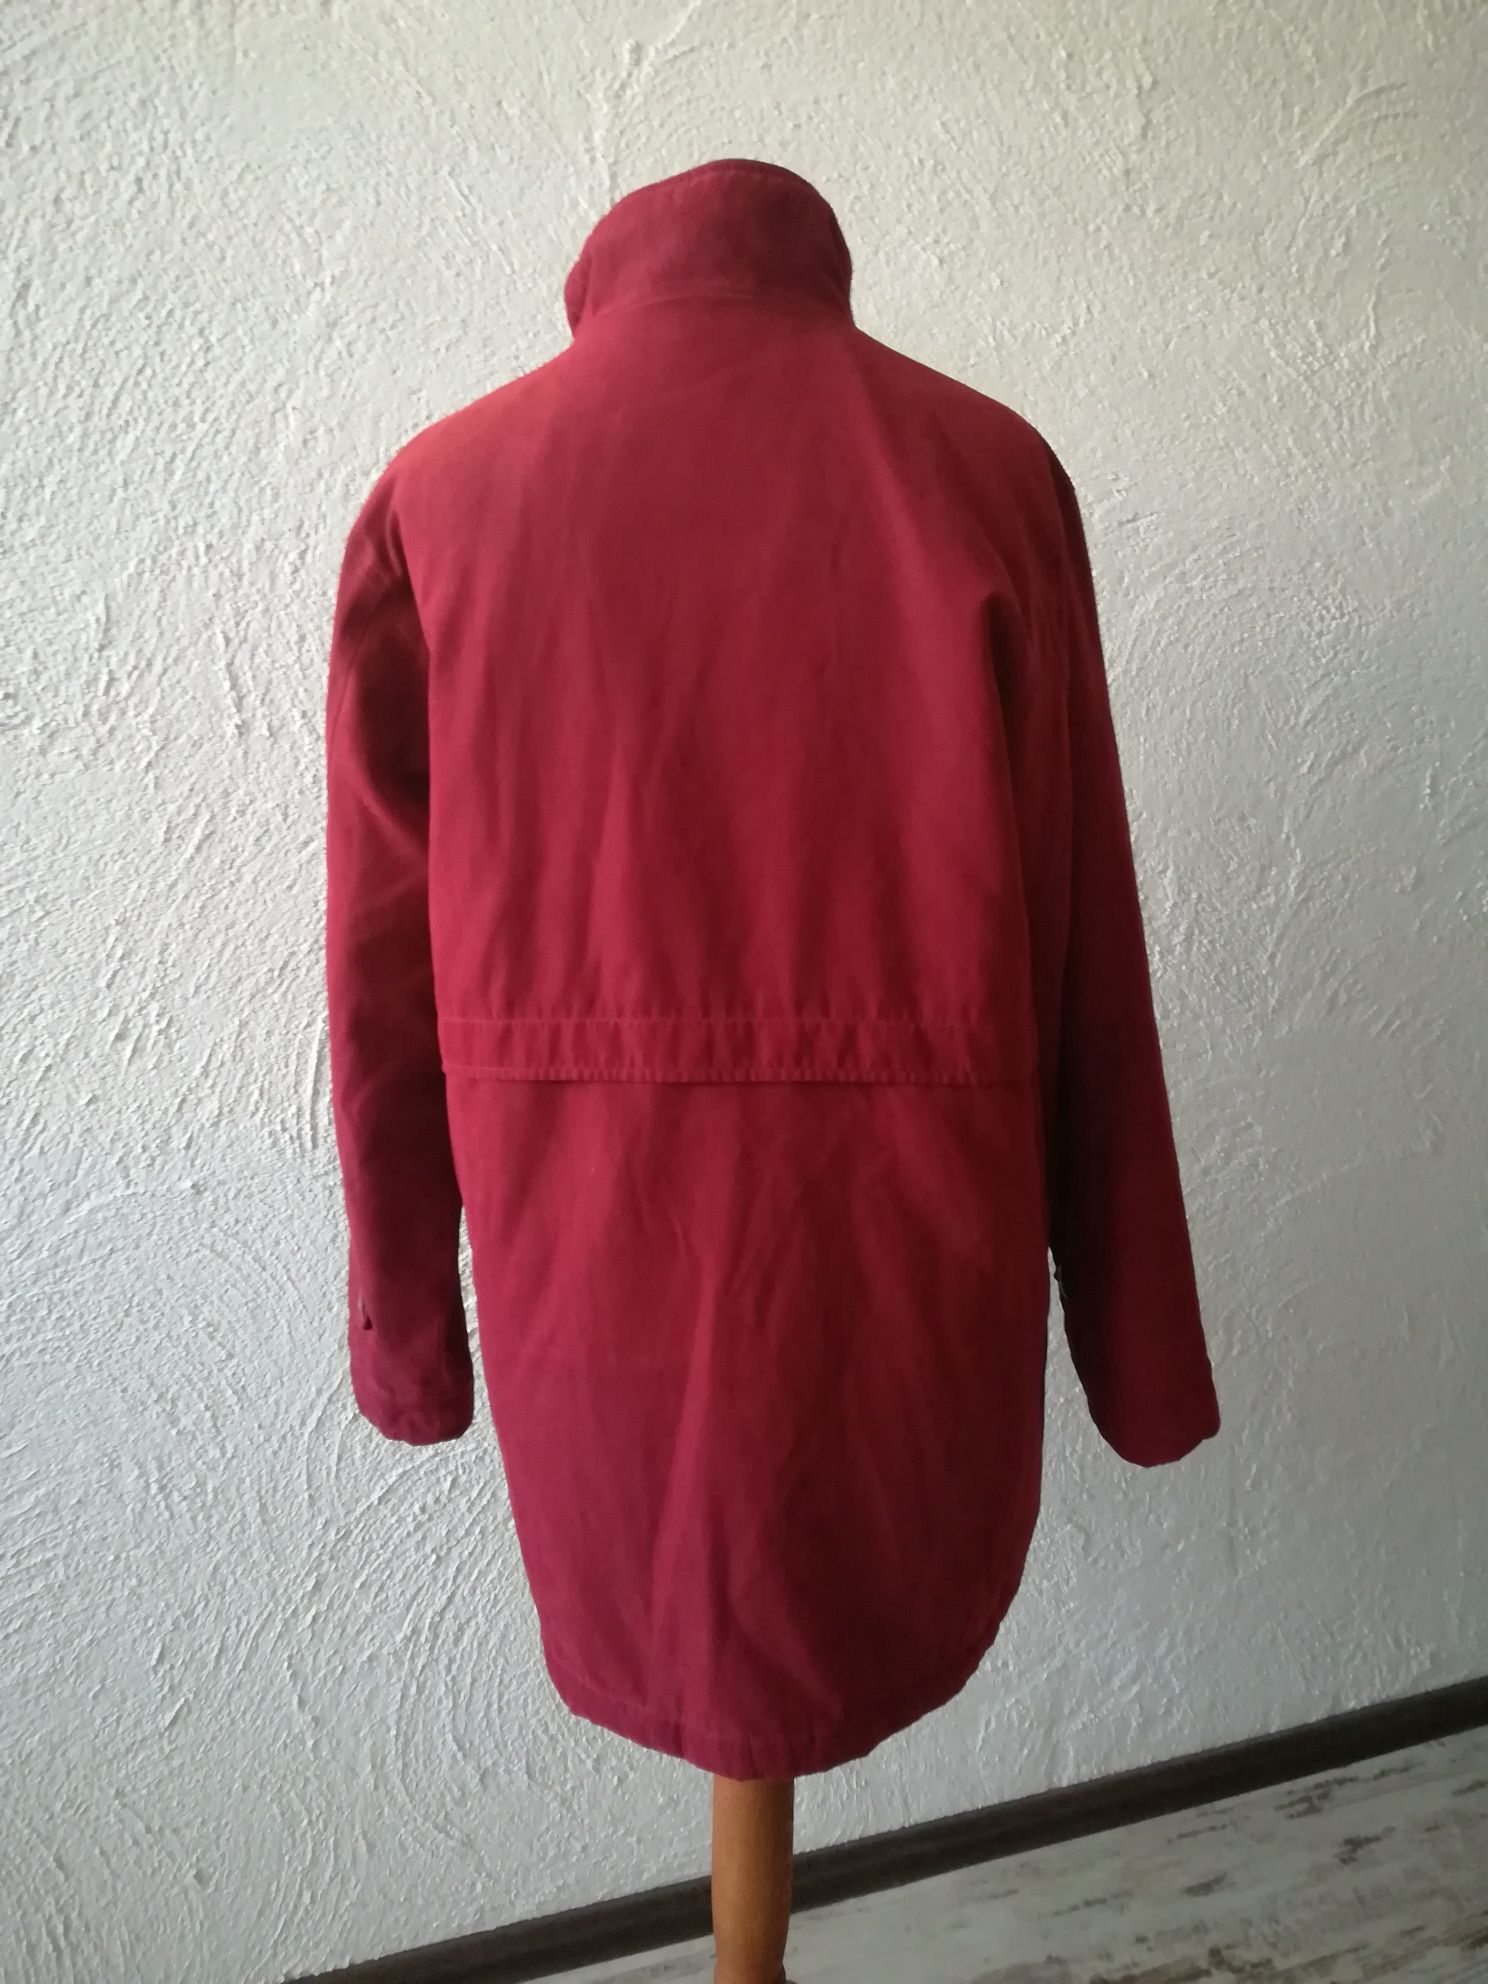 Jak nowa śliczna czerwona kurtka na zimę 42 XL zdobiona ciepła